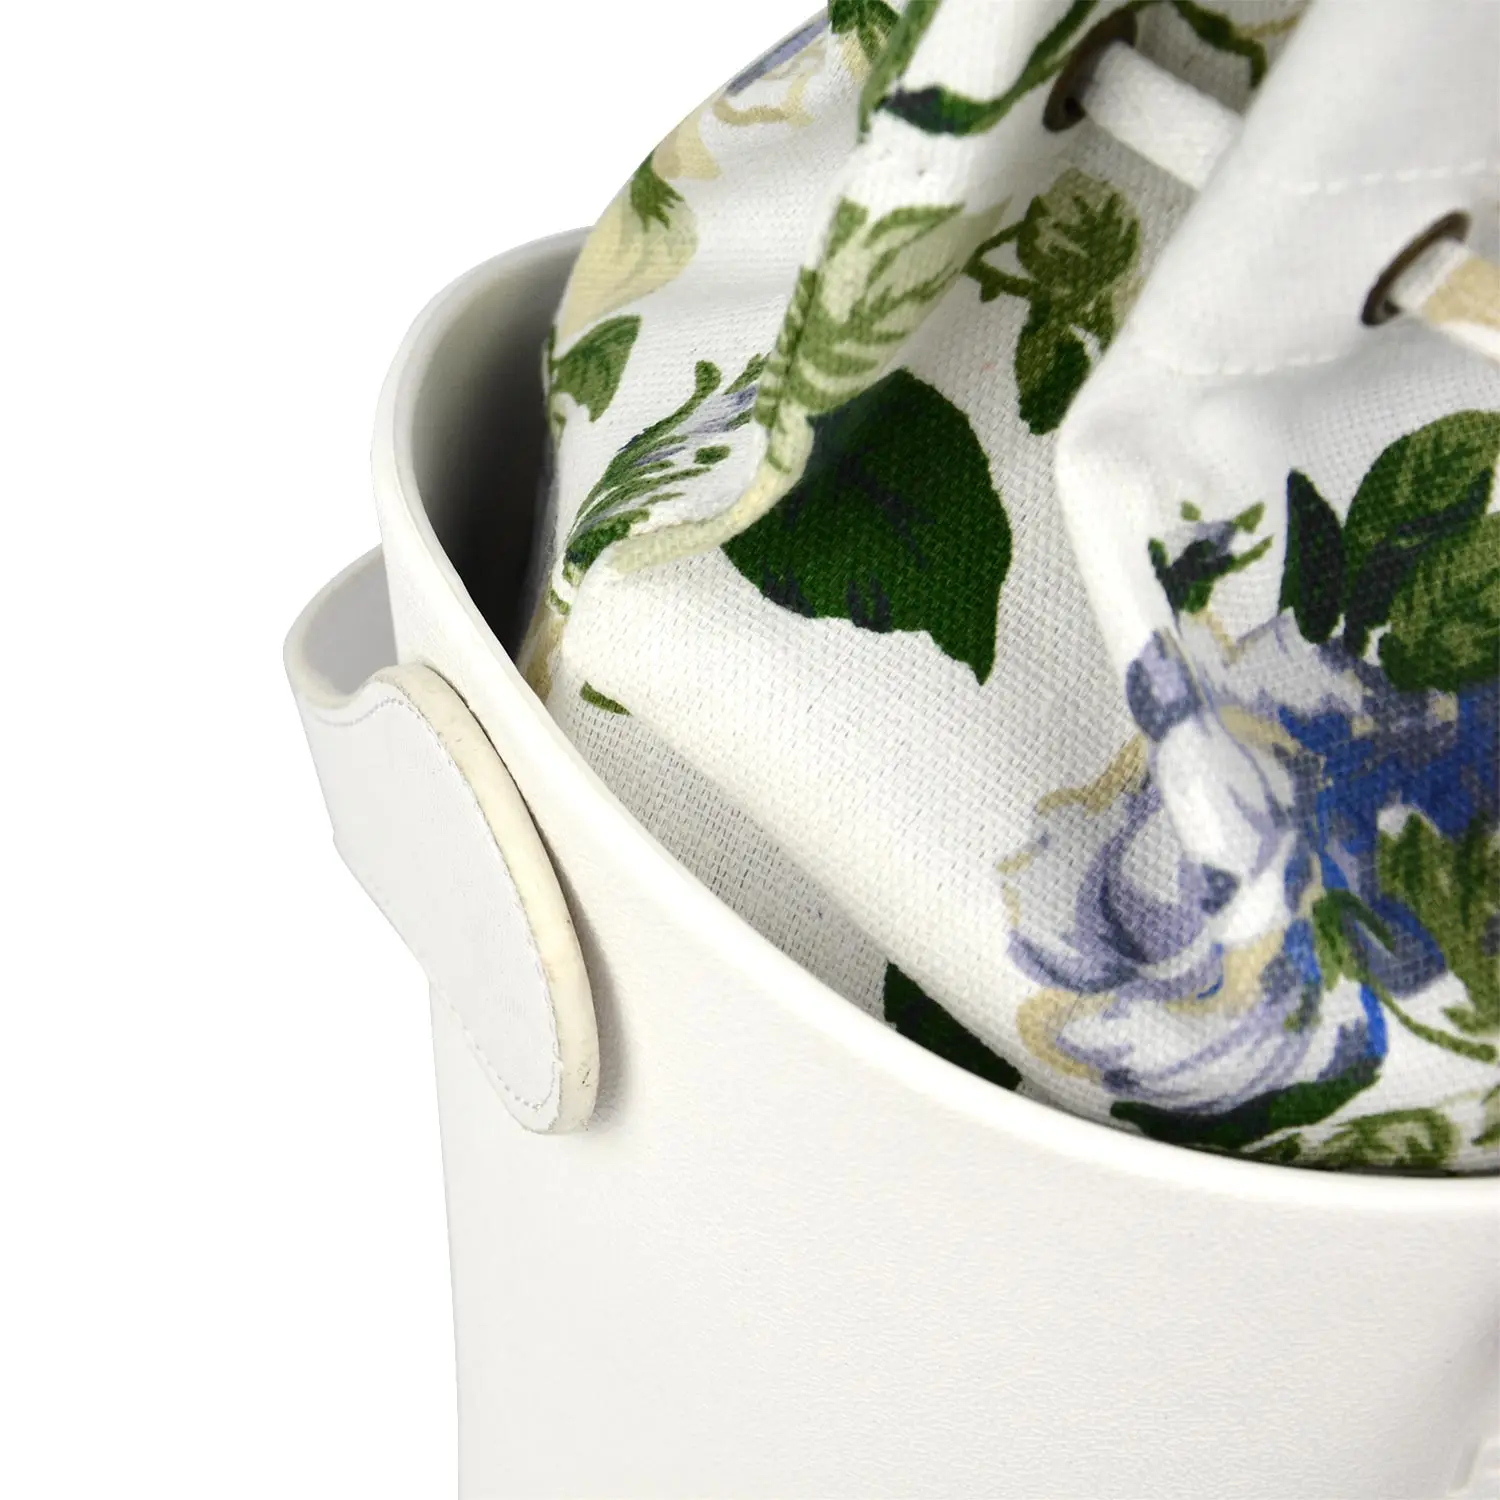 ANLAIBEIER Ambag EVA Obag стильная корзина с ручками и ремешками, Женская тканевая сумка на плечо с цветочной вставкой, сумка-мессенджер